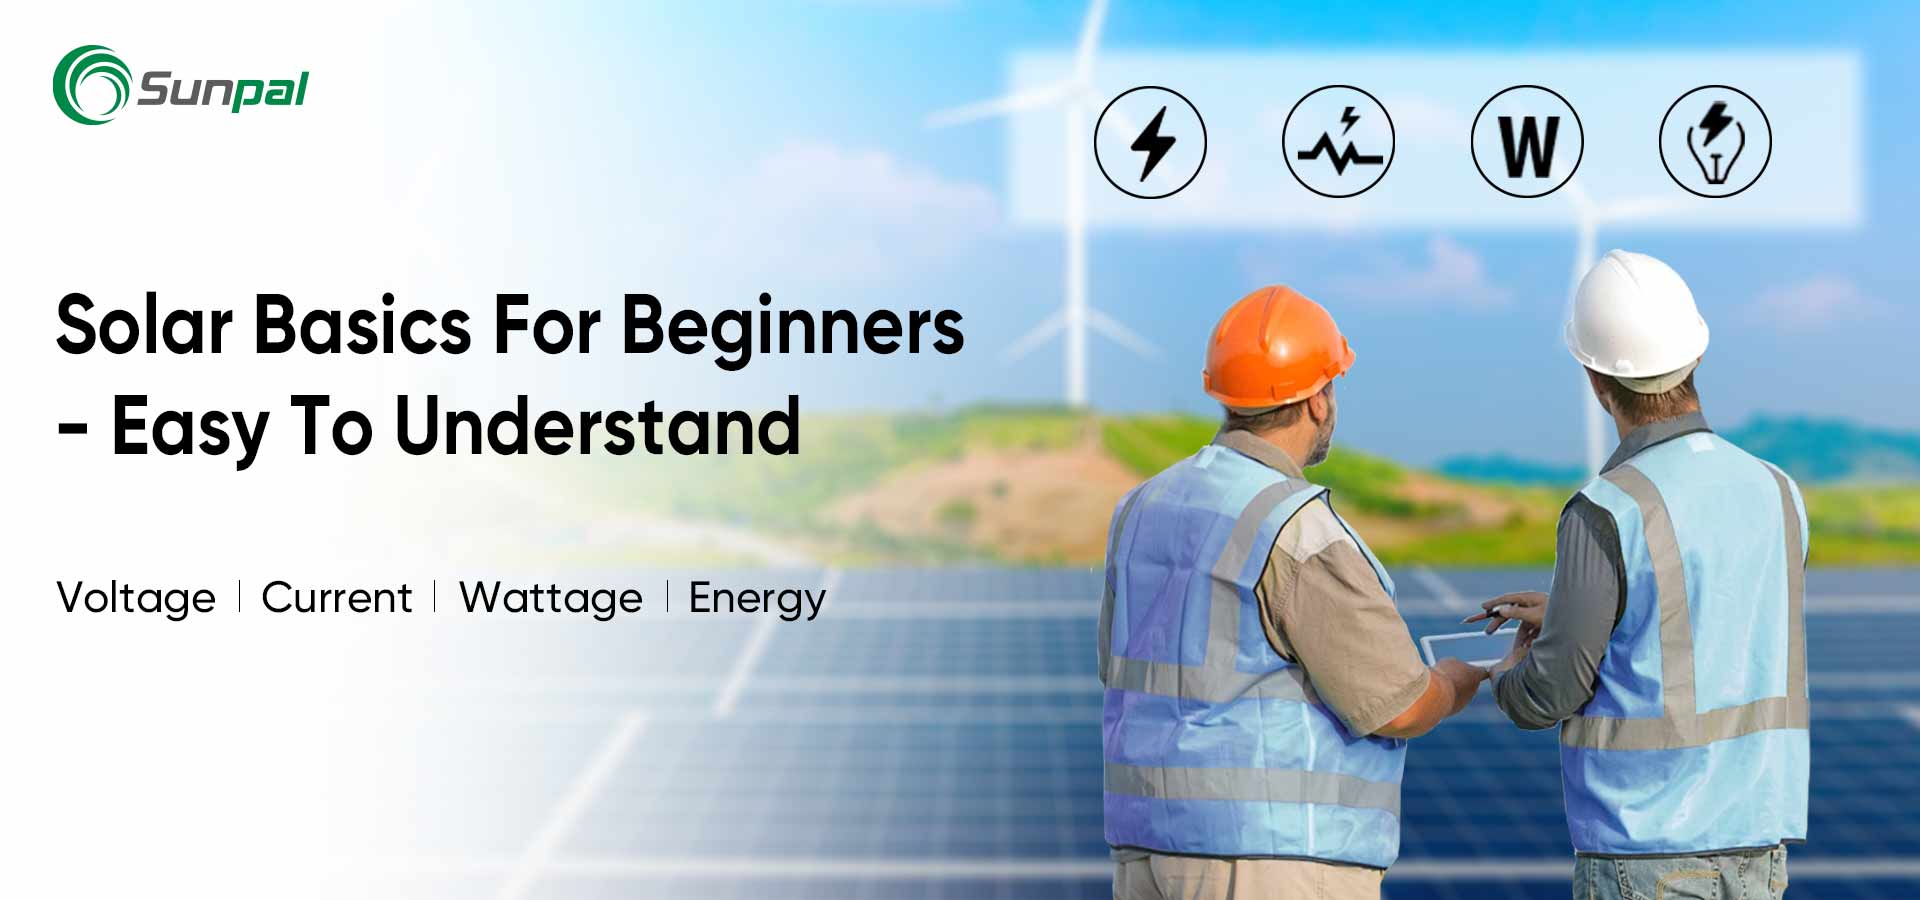 Conceptos básicos de energía solar para principiantes: voltaje maestro/corriente/potencia/energía